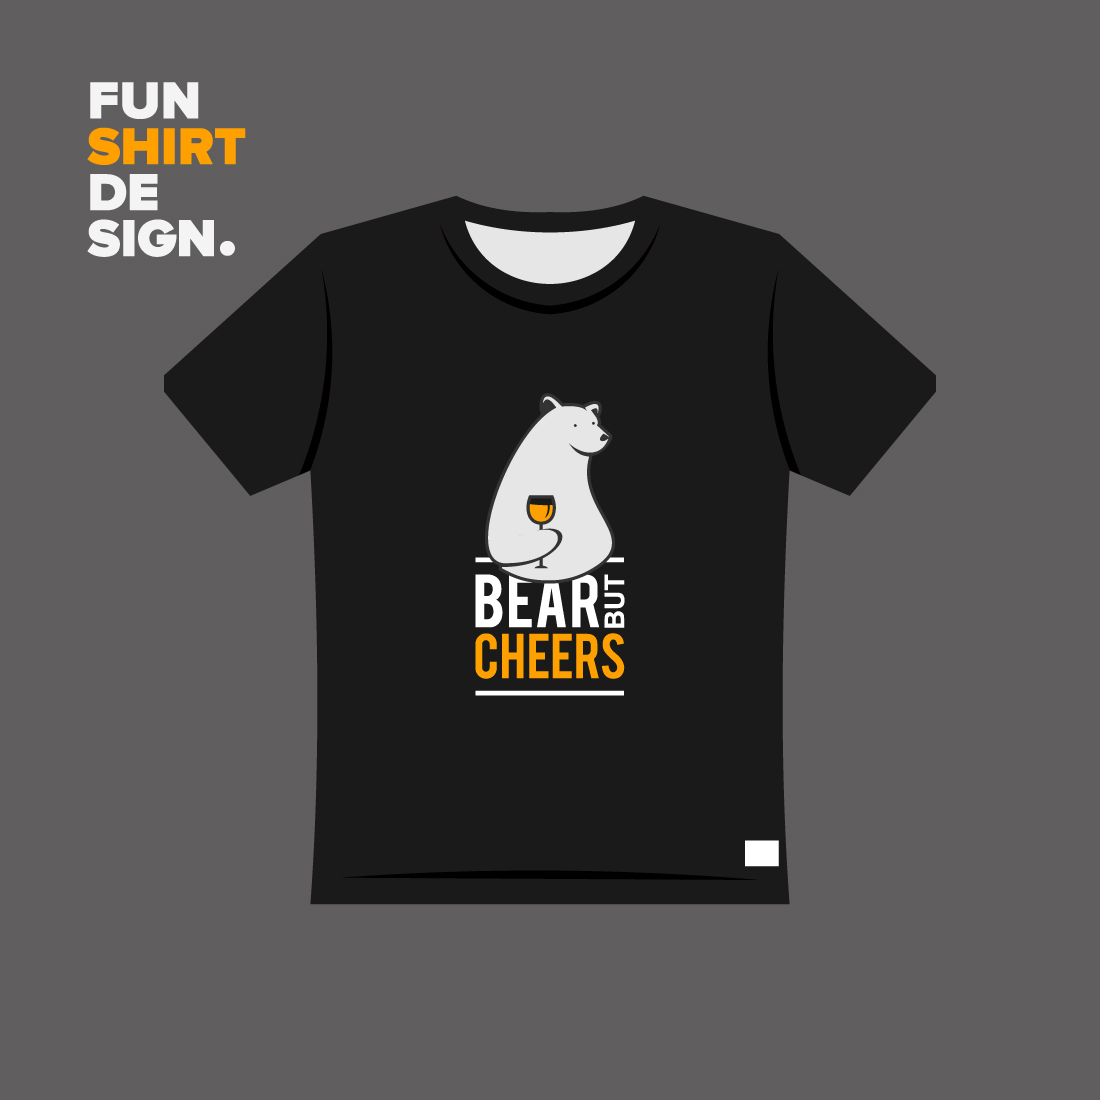 Fun Bearish Design Playful T-shirt Print preview image.